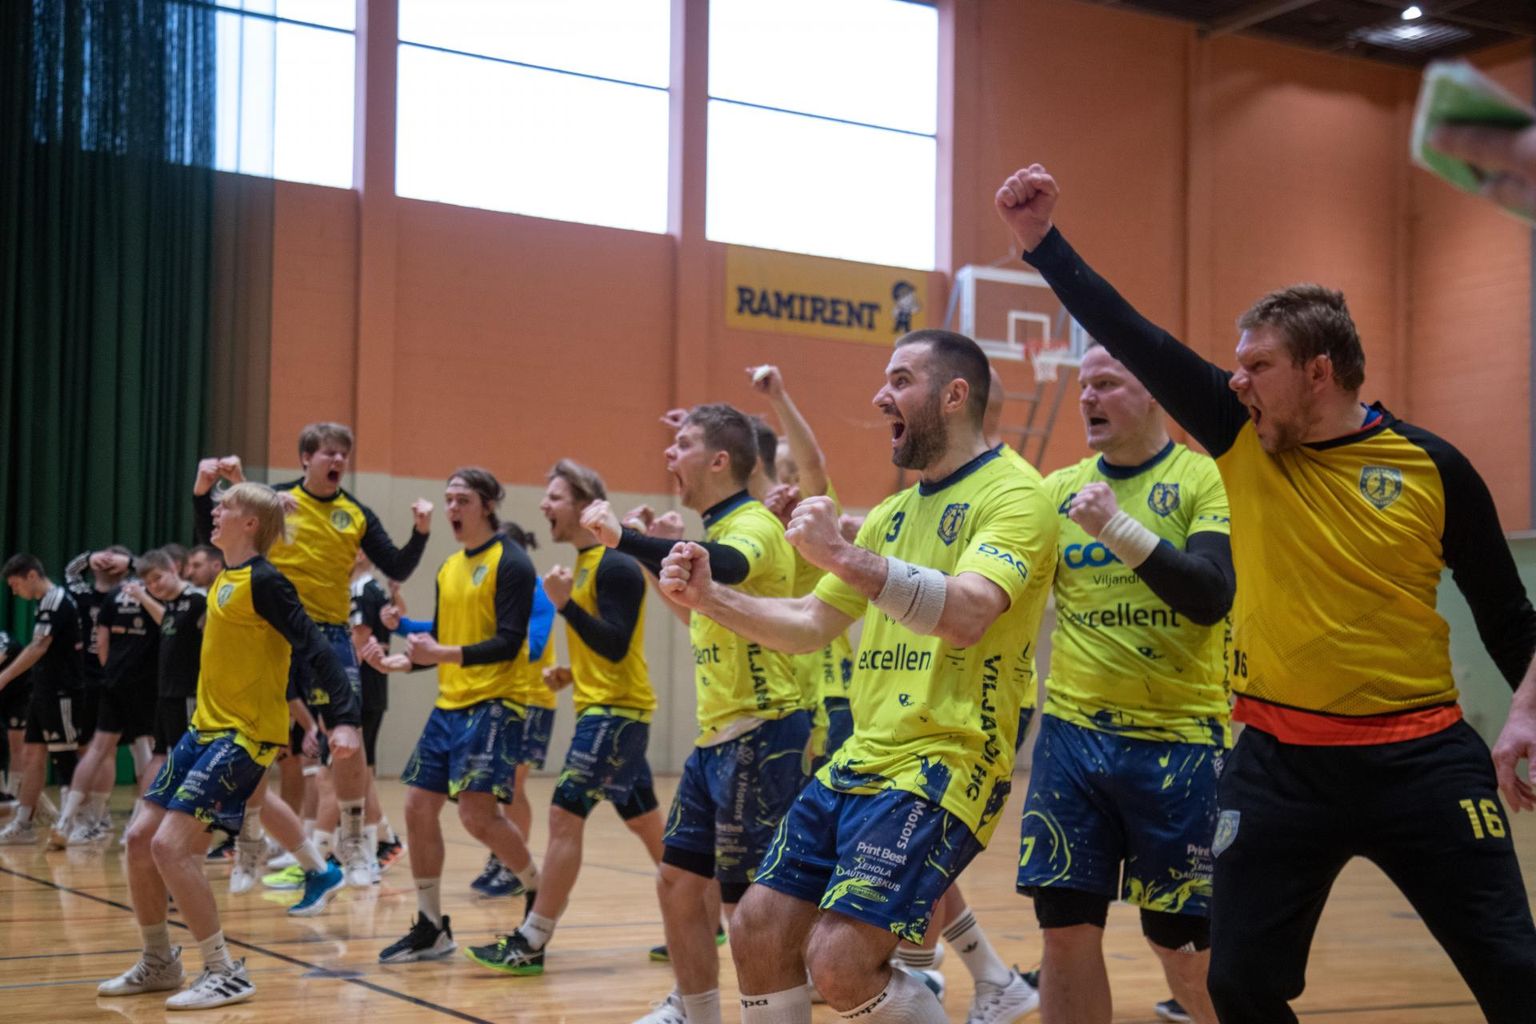 Võidukalt edasi Balti liiga poolfinaali! Laupäeval alistas Viljandi HC kodusaalis
SK Tapa / N.R. Energy meeskonna väga pingeliseks kujunenud veerandfinaalkohtumises, mis kulmineerus seitsme meetri karistusvisetega.